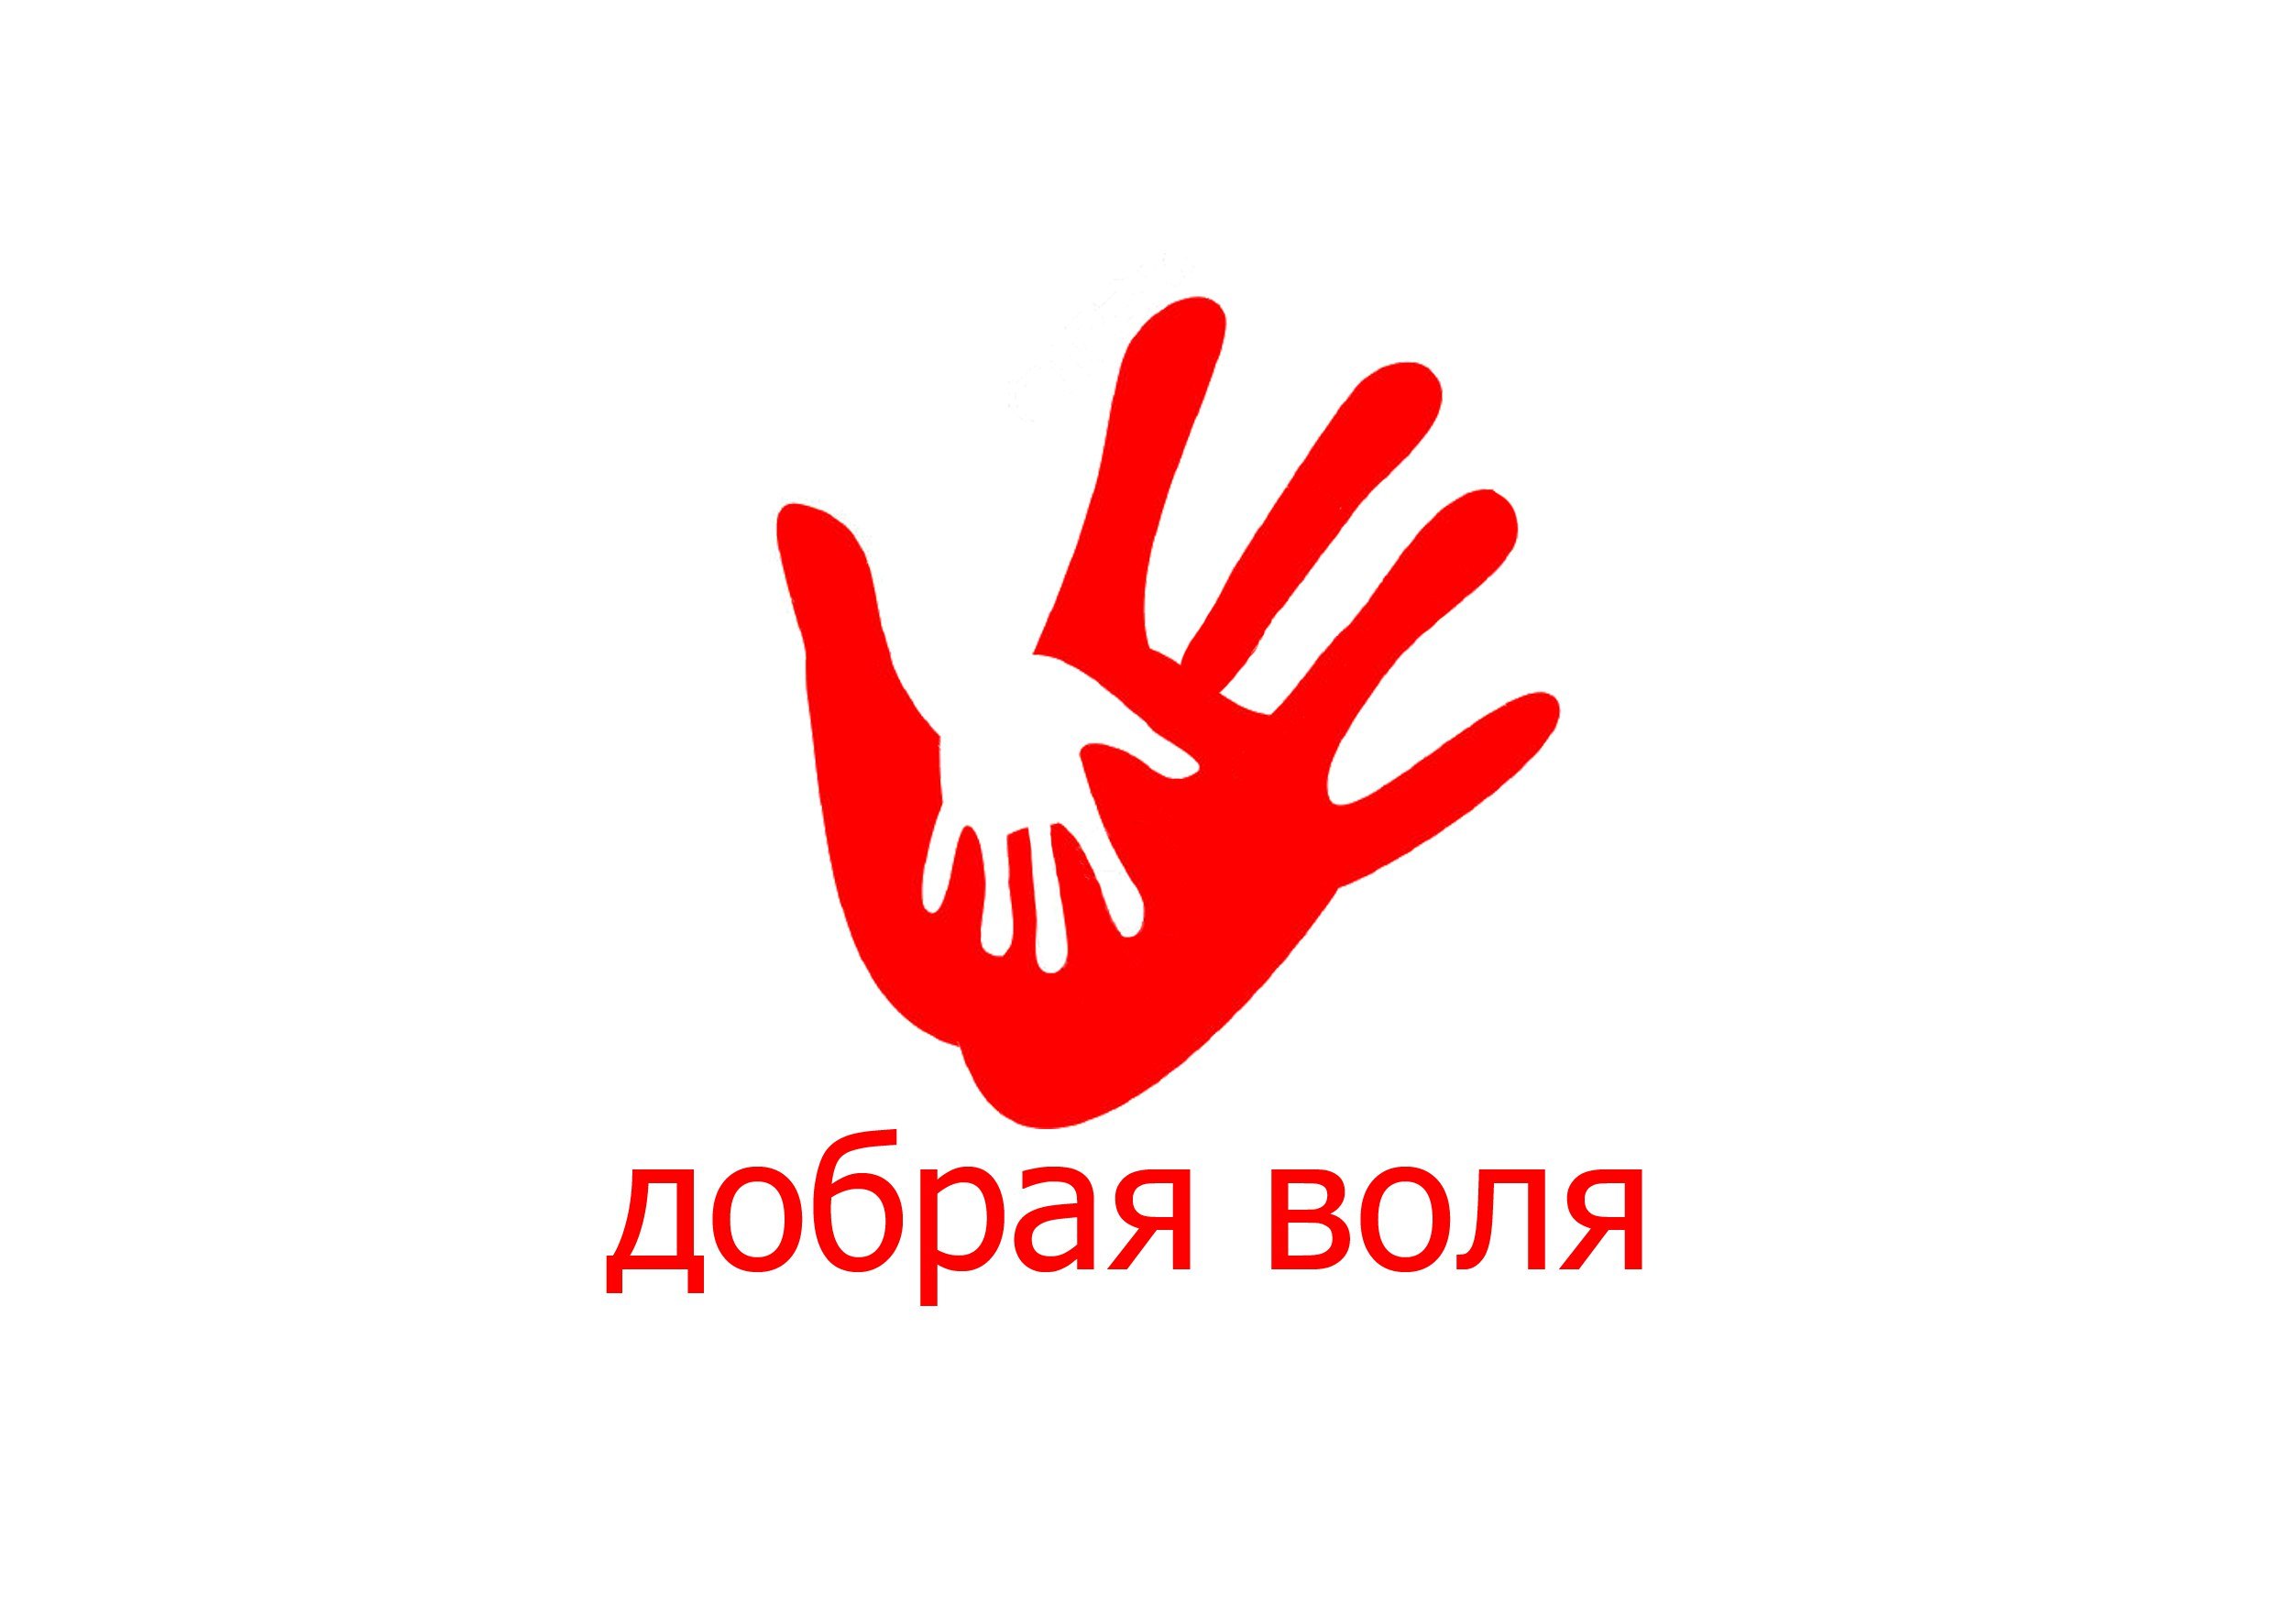 Картина волонтера. Символ волонтеров. Символ волонтеров России. Эмблема добровольцев. Логотип волонтерского движения.